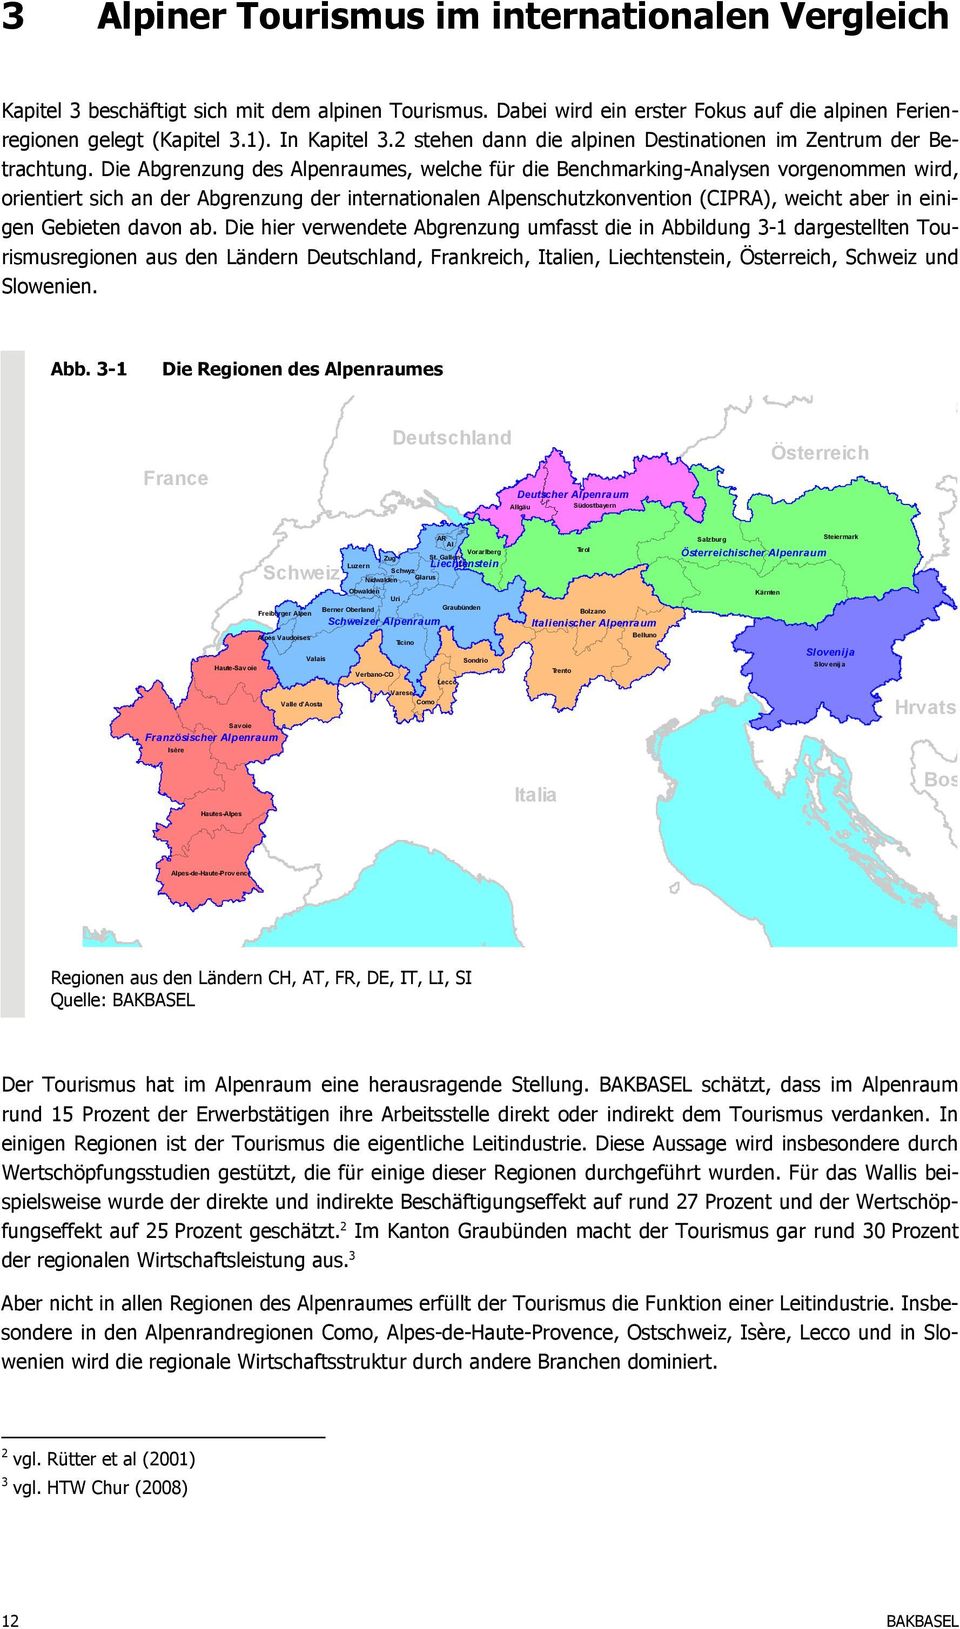 Die Abgrenzung des Alpenraumes, welche für die Benchmarking-Analysen vorgenommen wird, orientiert sich an der Abgrenzung der internationalen Alpenschutzkonvention (CIPRA), weicht aber in einigen